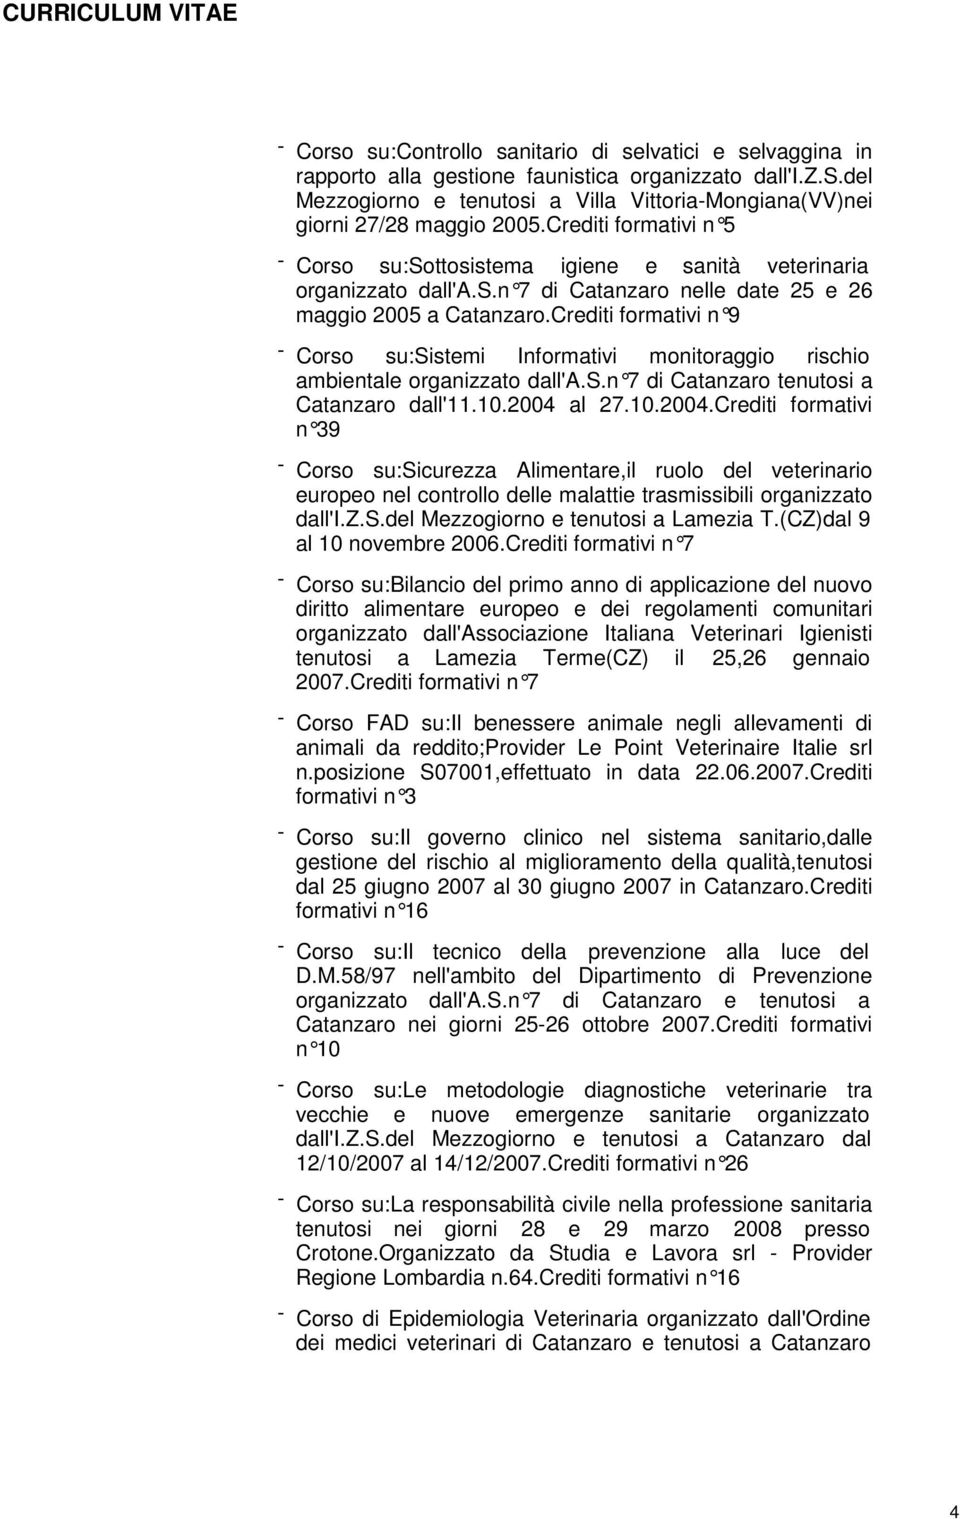 Crediti formativi n 9 - Corso su:sistemi Informativi monitoraggio rischio ambientale organizzato dall'a.s.n 7 di Catanzaro te nutosi a Catanzaro dall'11.10.2004 